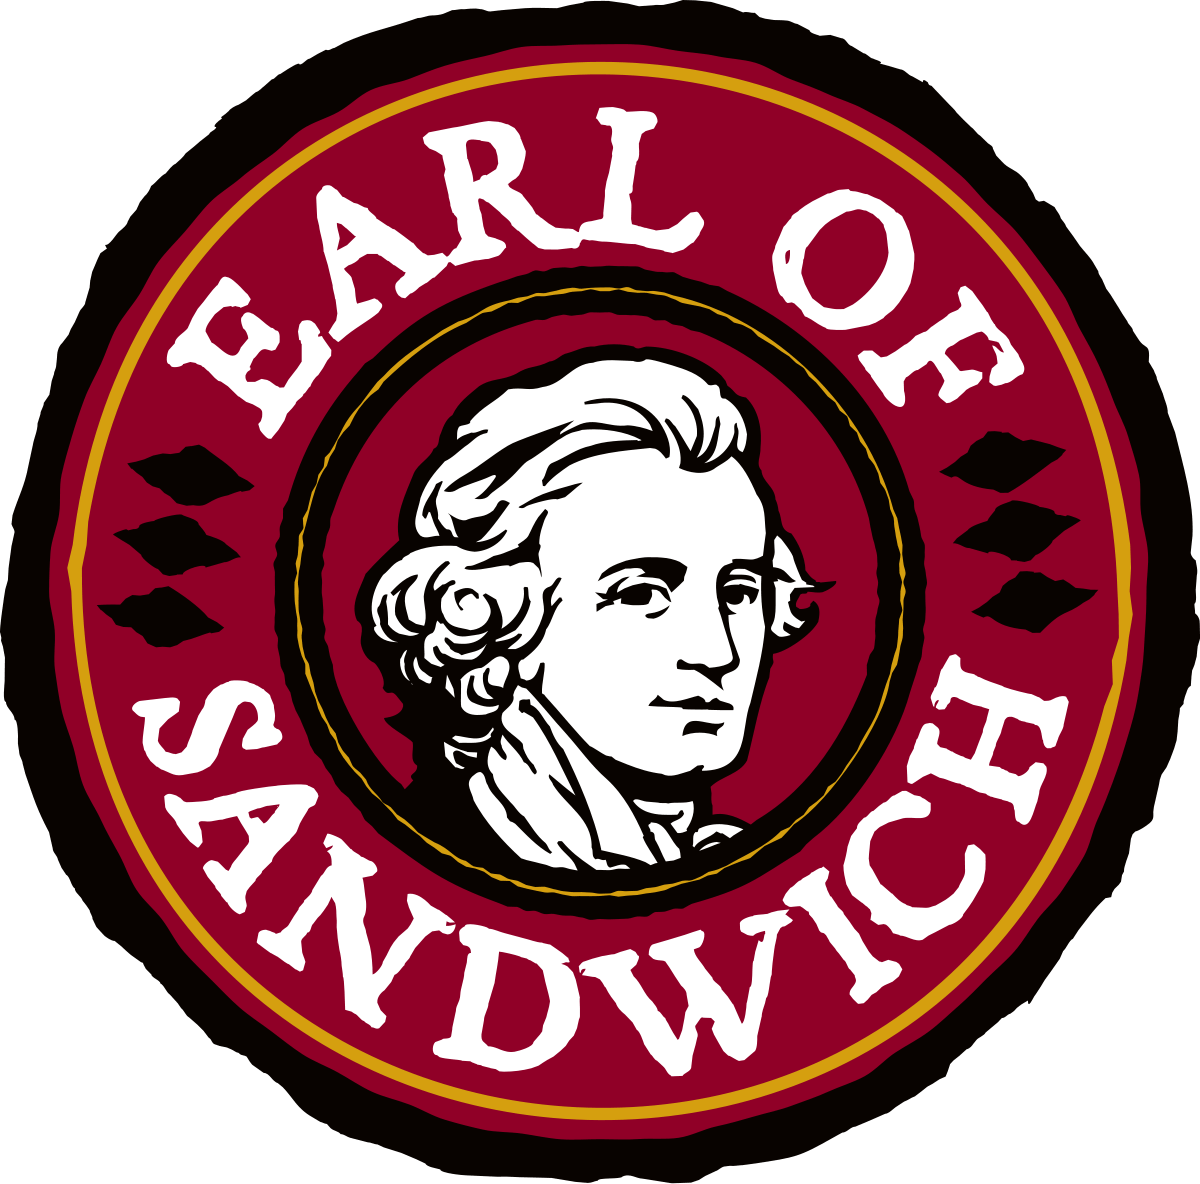 Earl Logo - Earl of Sandwich (restaurant)